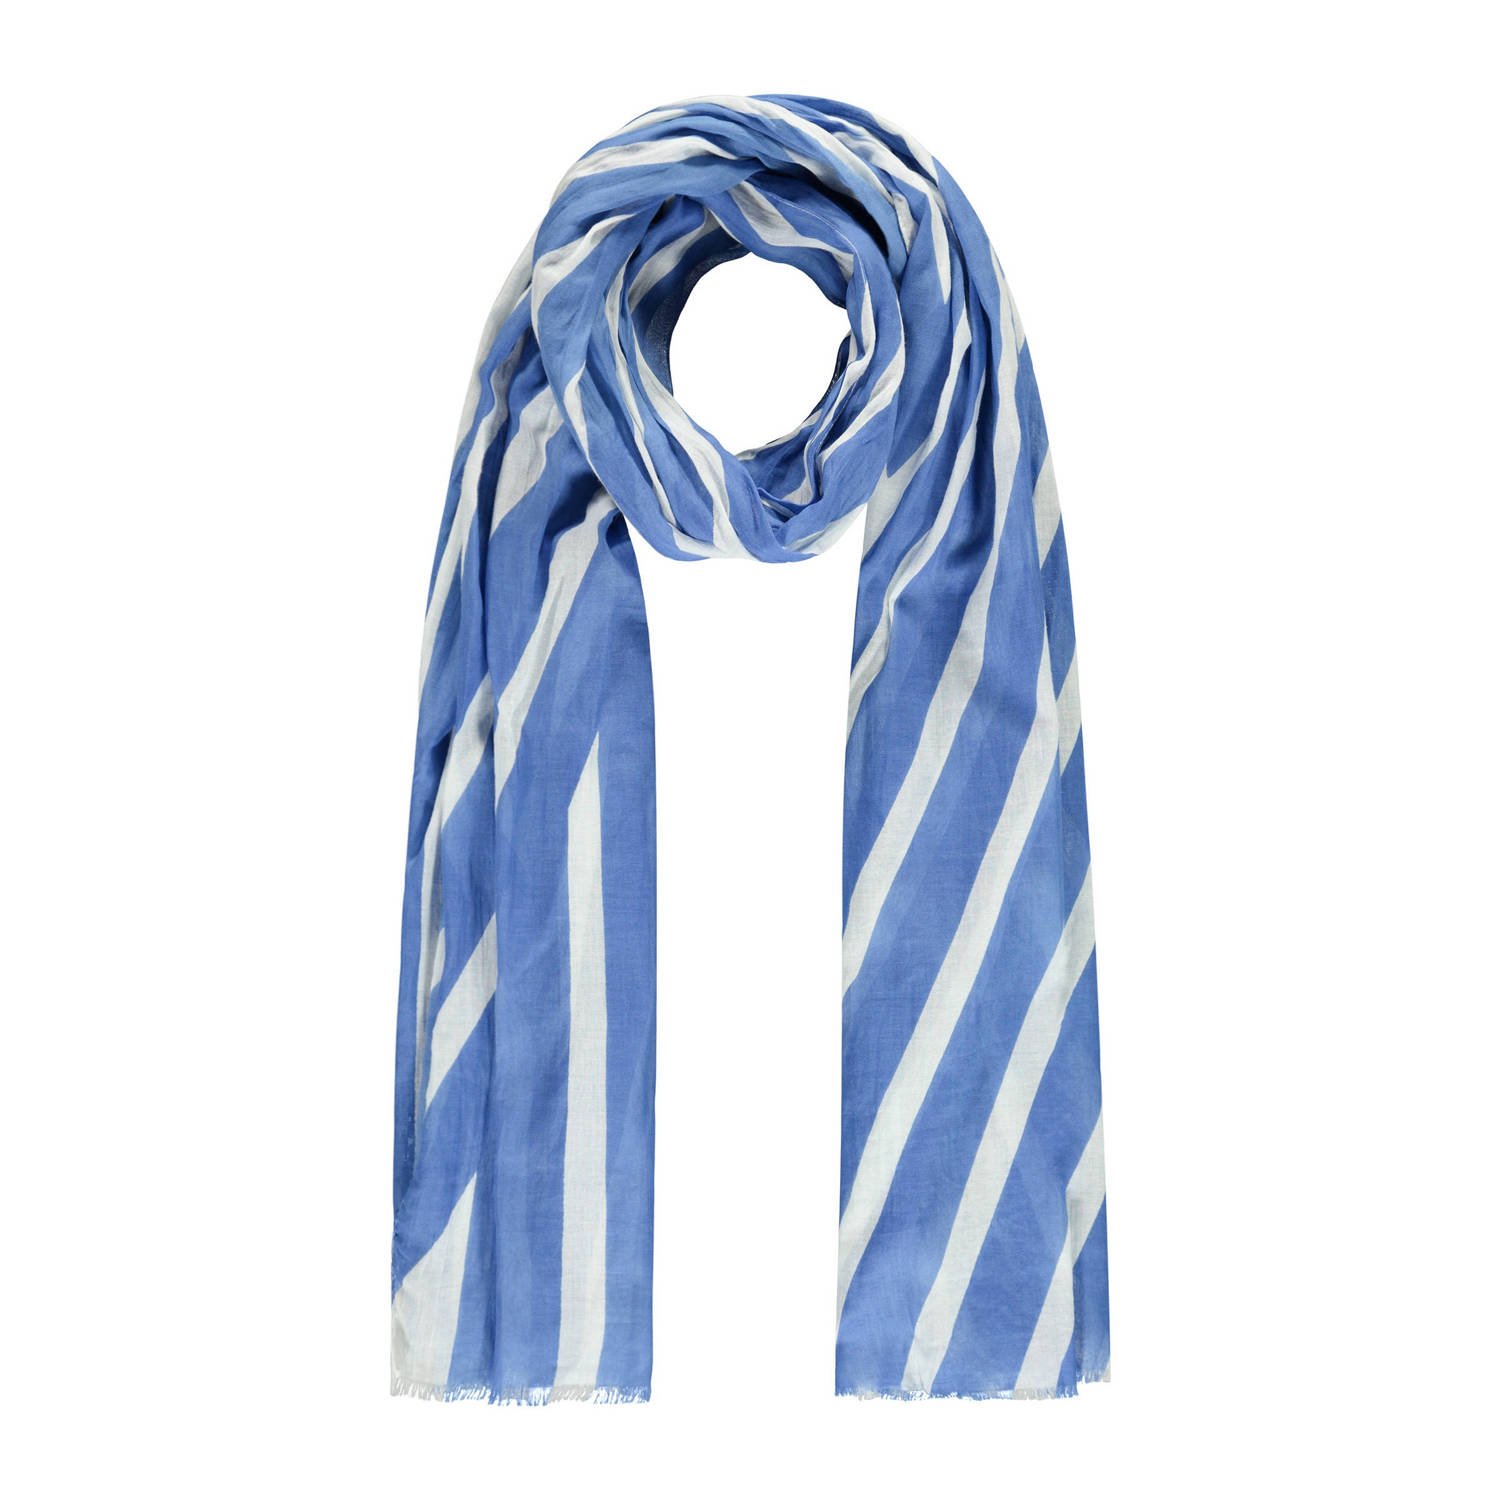 Expresso gestreepte sjaal blauw wit